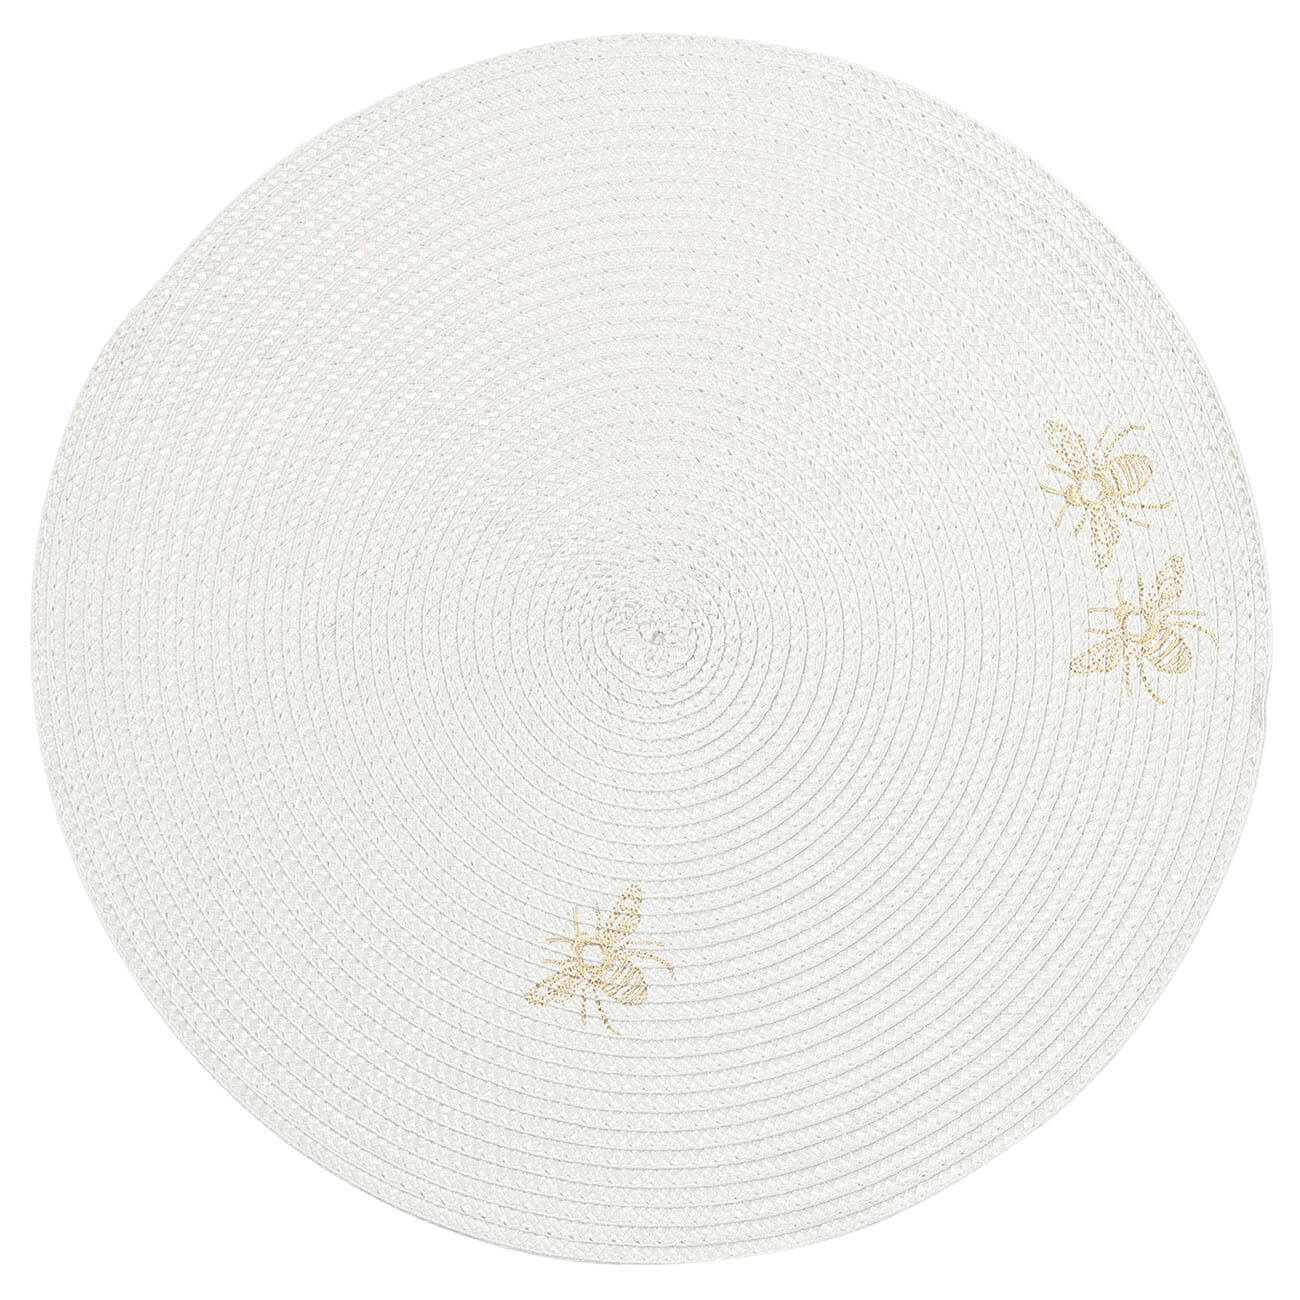 Салфетка под приборы, 38 см, полипропилен/ПЭТ, круглая, светло-серая, Пчелы, Circle embroidery